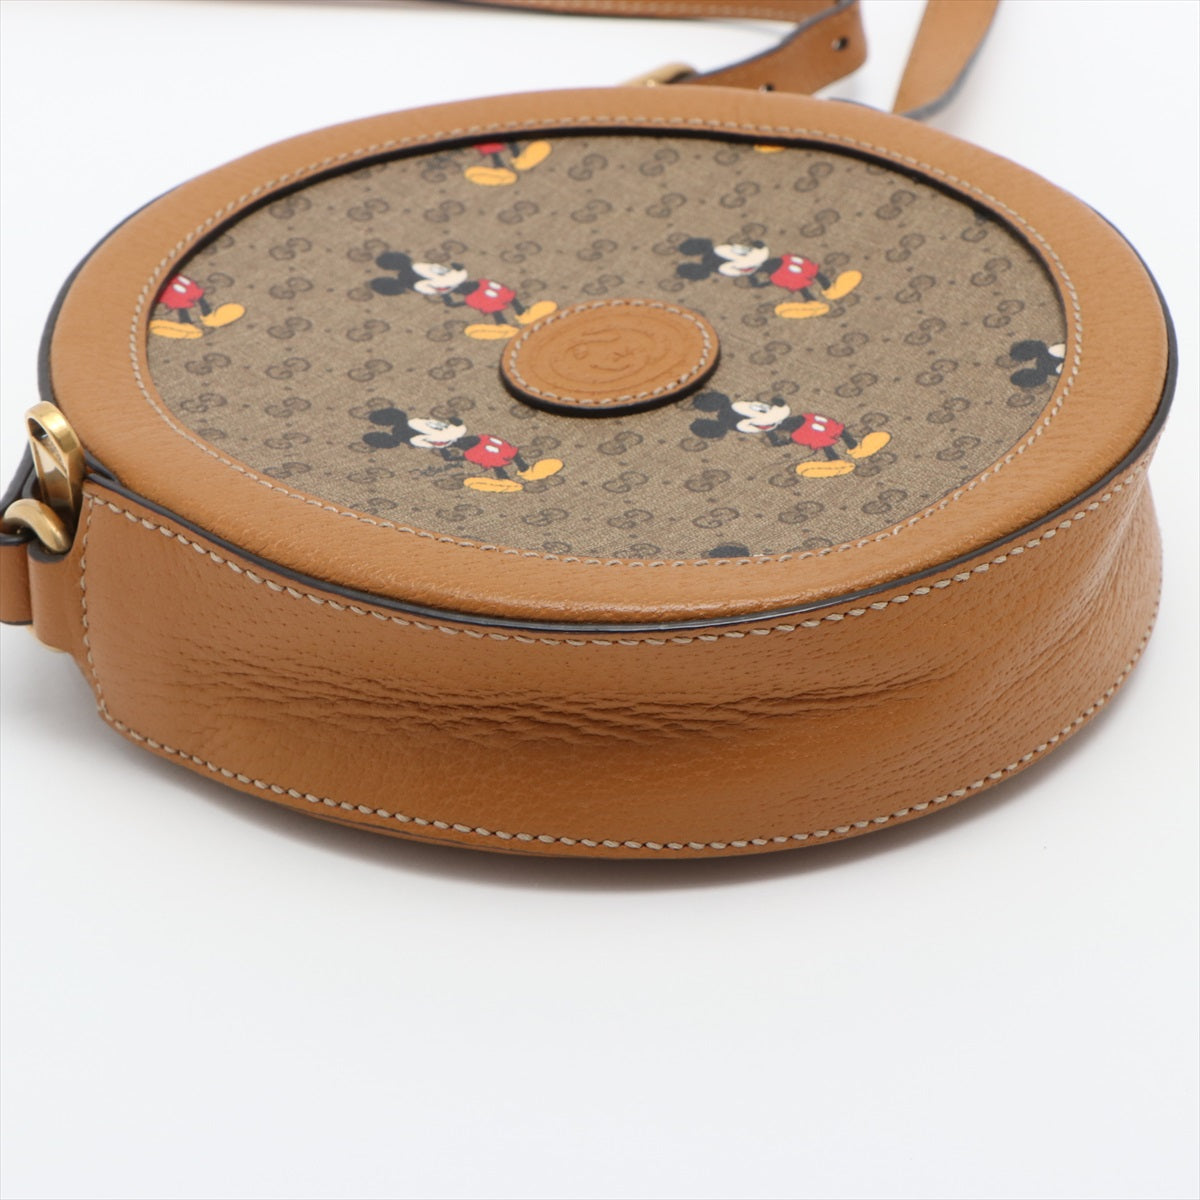 Gucci x Disney Mini GG Supreme PVC & leather Beige 603938